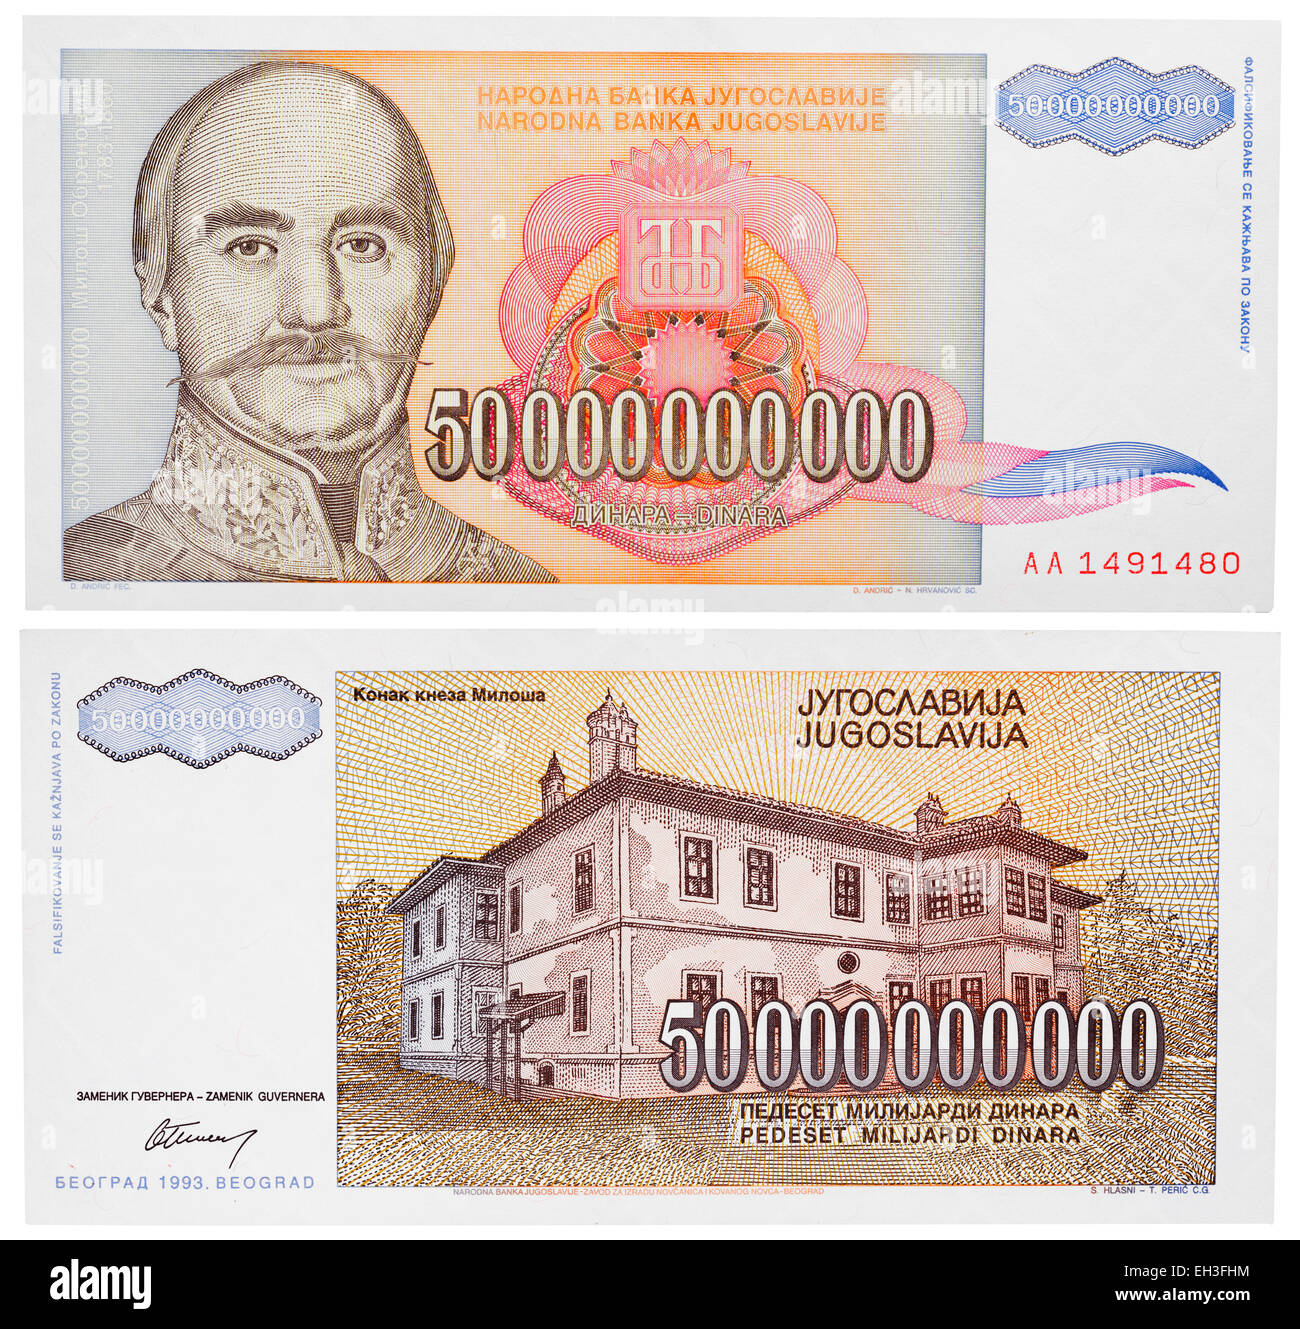 50 milliard dinars banknote, Milan Obrenovic, Jugoslavia, 1993 Stock Photo